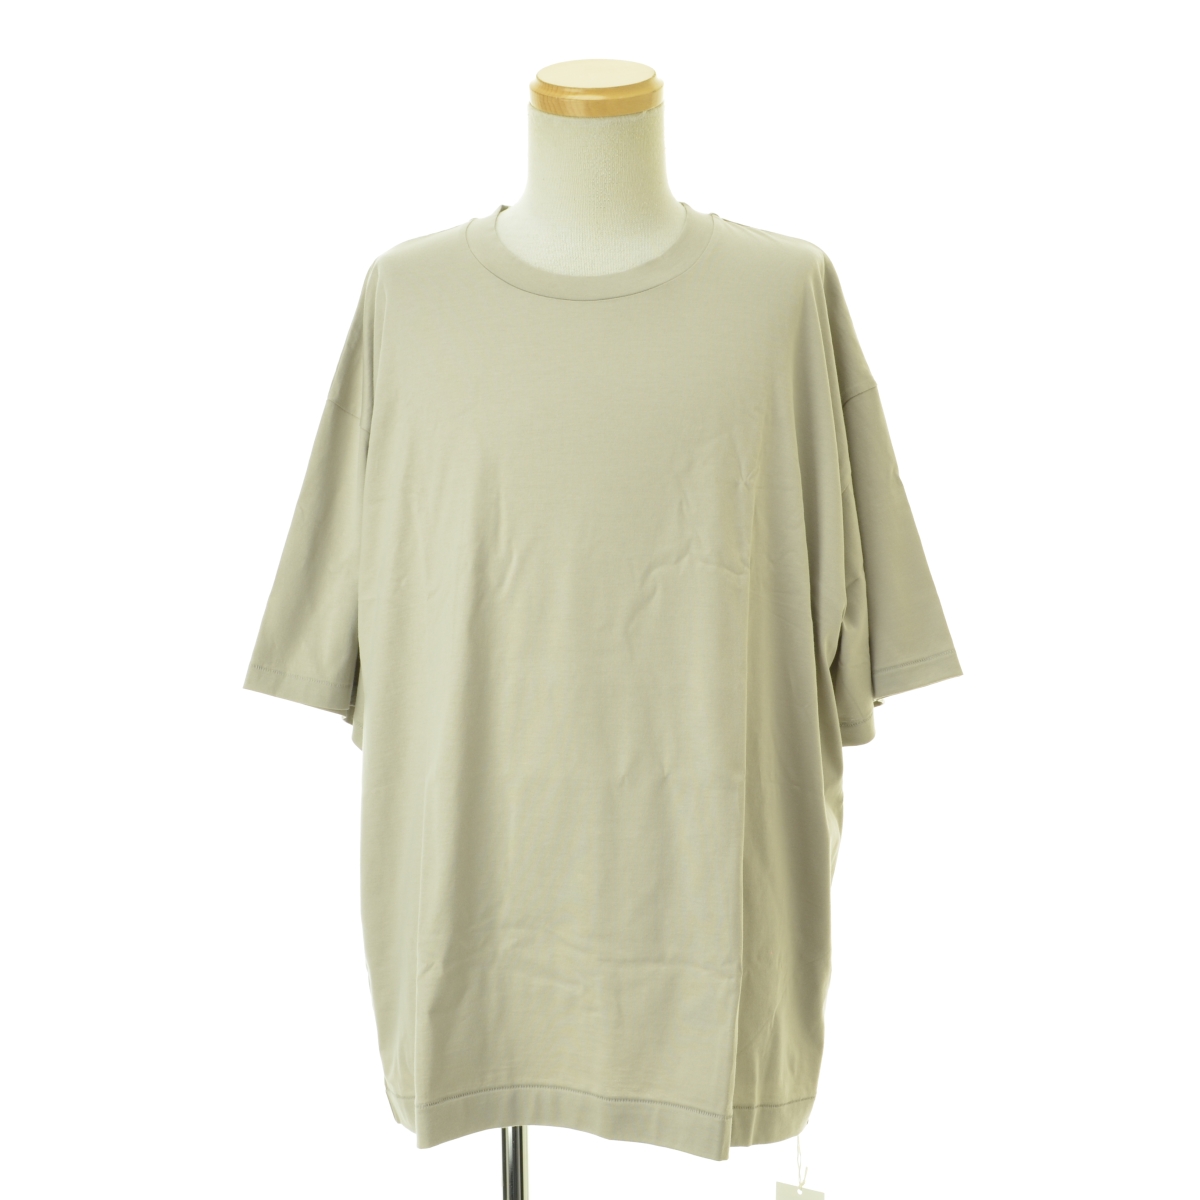 ATON / エイトン 169-2166006 SUVIN60/2 OVERSIZED T-SHIRT オーバーサイズ 半袖Tシャツ  -ブランド古着の買取販売カンフル